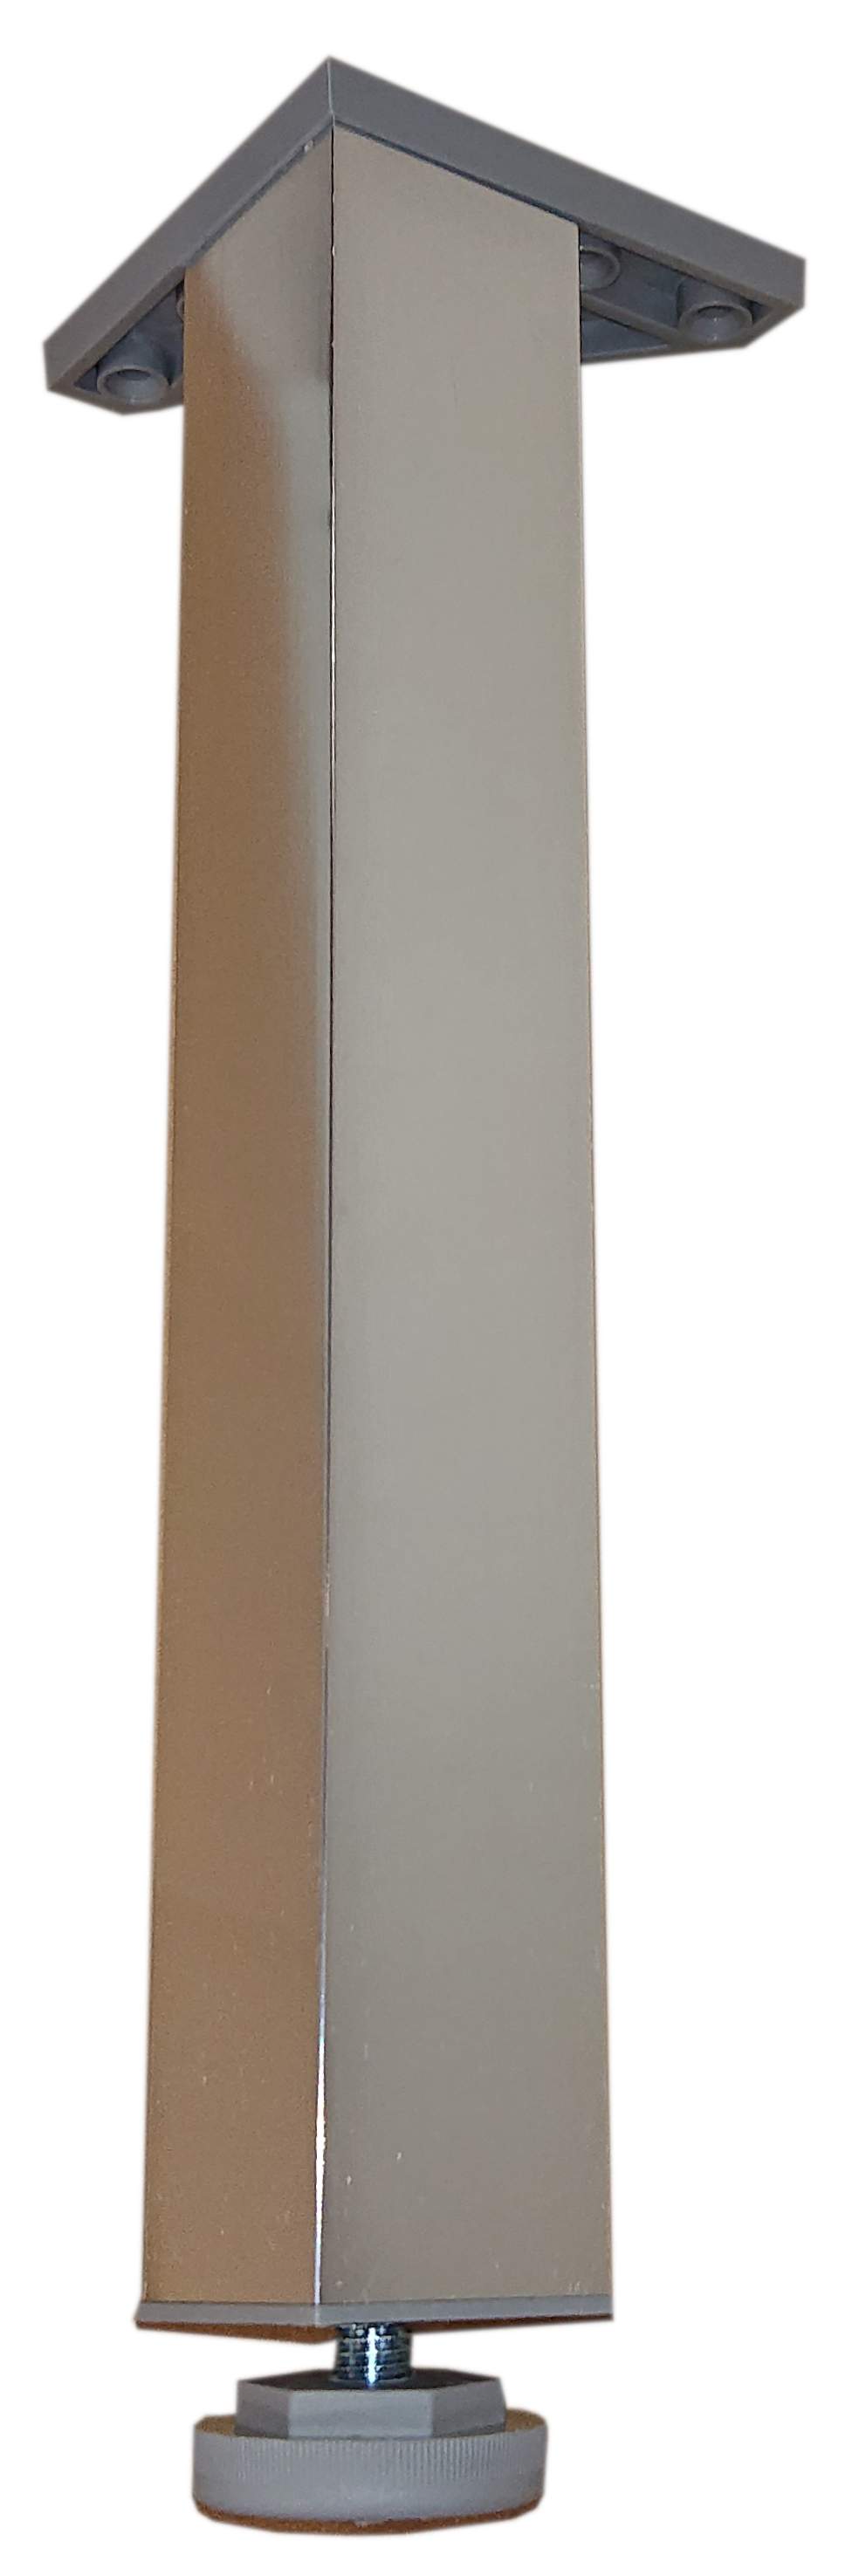 Pied carré chromé hauteur réglable de 270 à 290 mm